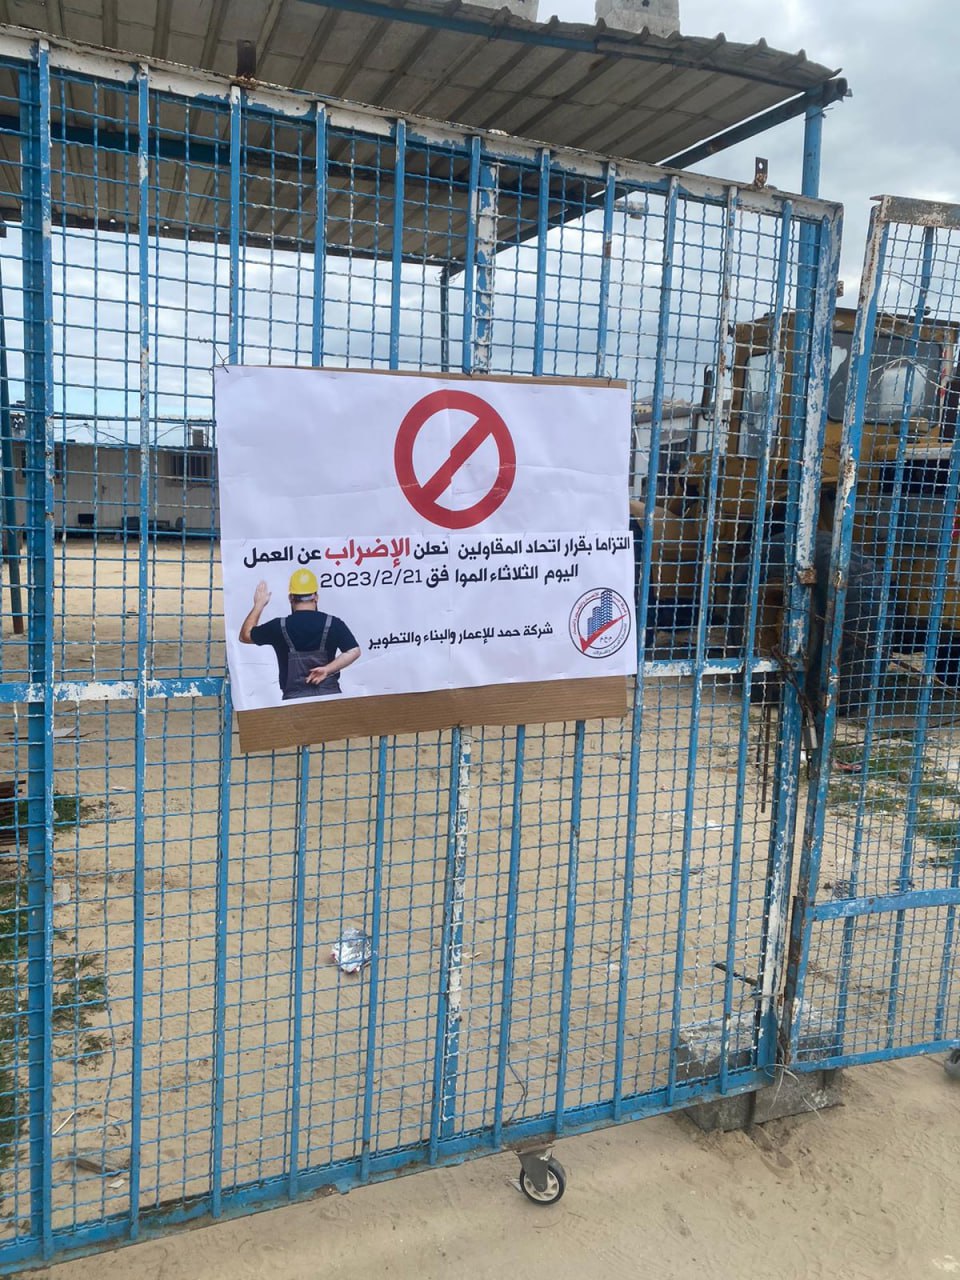 توقّف العمل في مشاريع المقاولات الخاصّة بوكالة "أونروا" نتيجة إضراب المقاولين بغزة